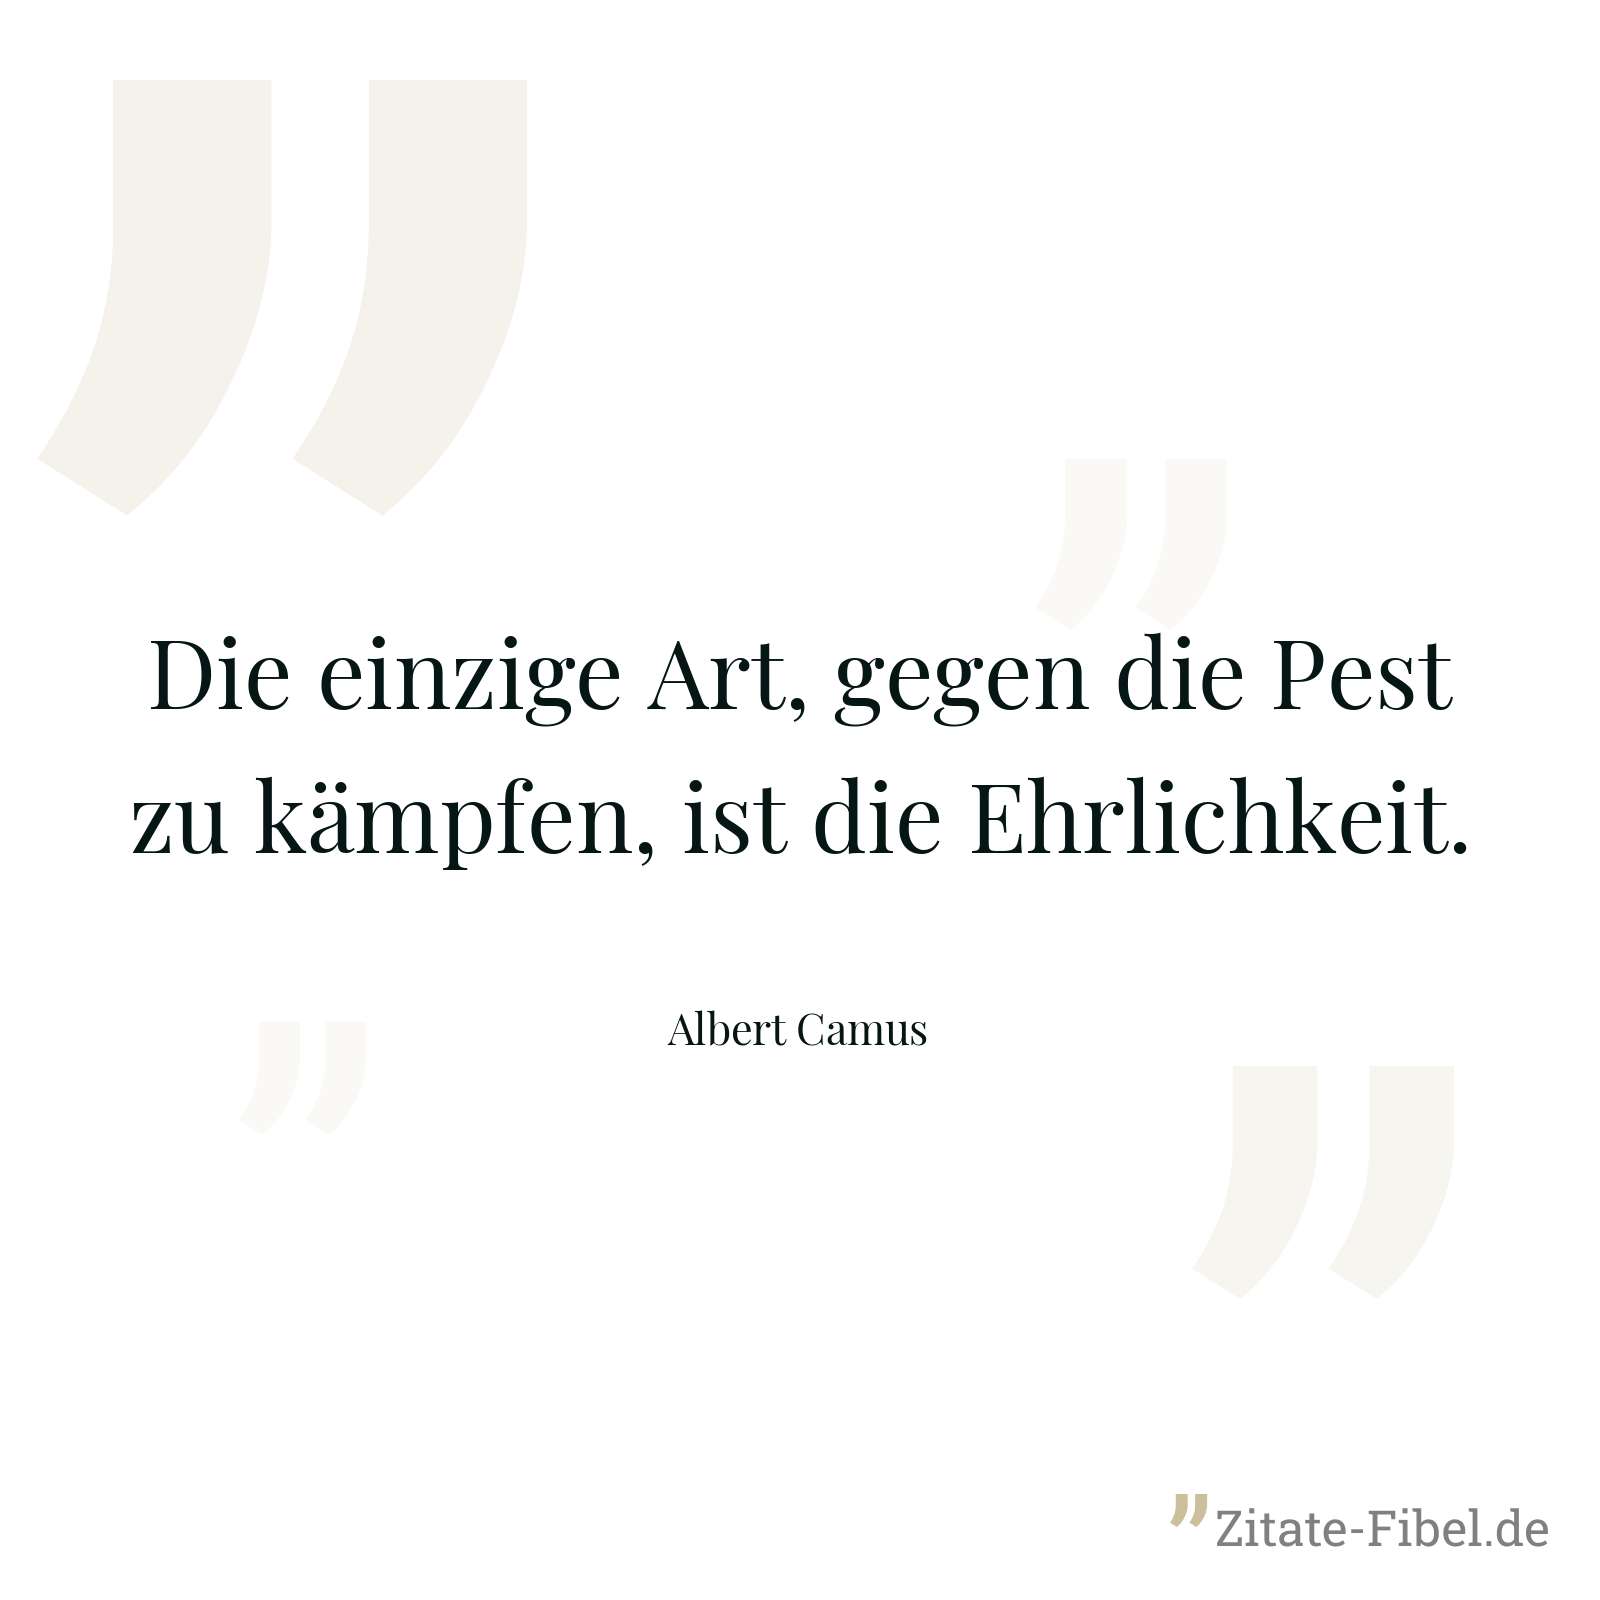 Die einzige Art, gegen die Pest zu kämpfen, ist die Ehrlichkeit. - Albert Camus